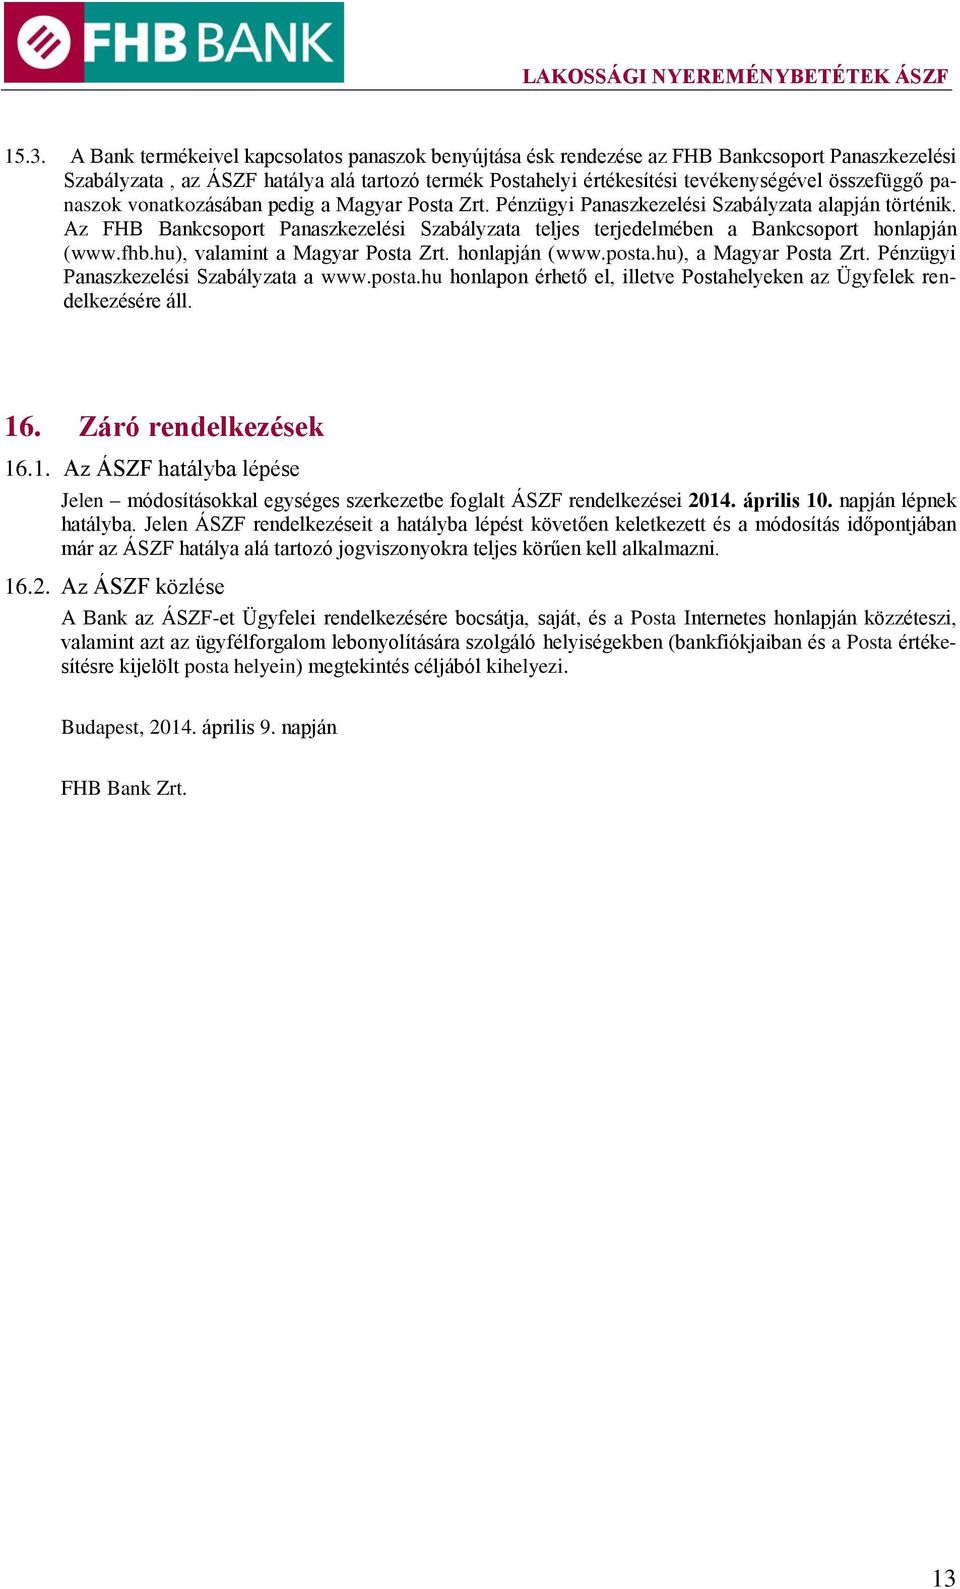 Az FHB Bankcsoport Panaszkezelési Szabályzata teljes terjedelmében a Bankcsoport honlapján (www.fhb.hu), valamint a Magyar Posta Zrt. honlapján (www.posta.hu), a Magyar Posta Zrt.